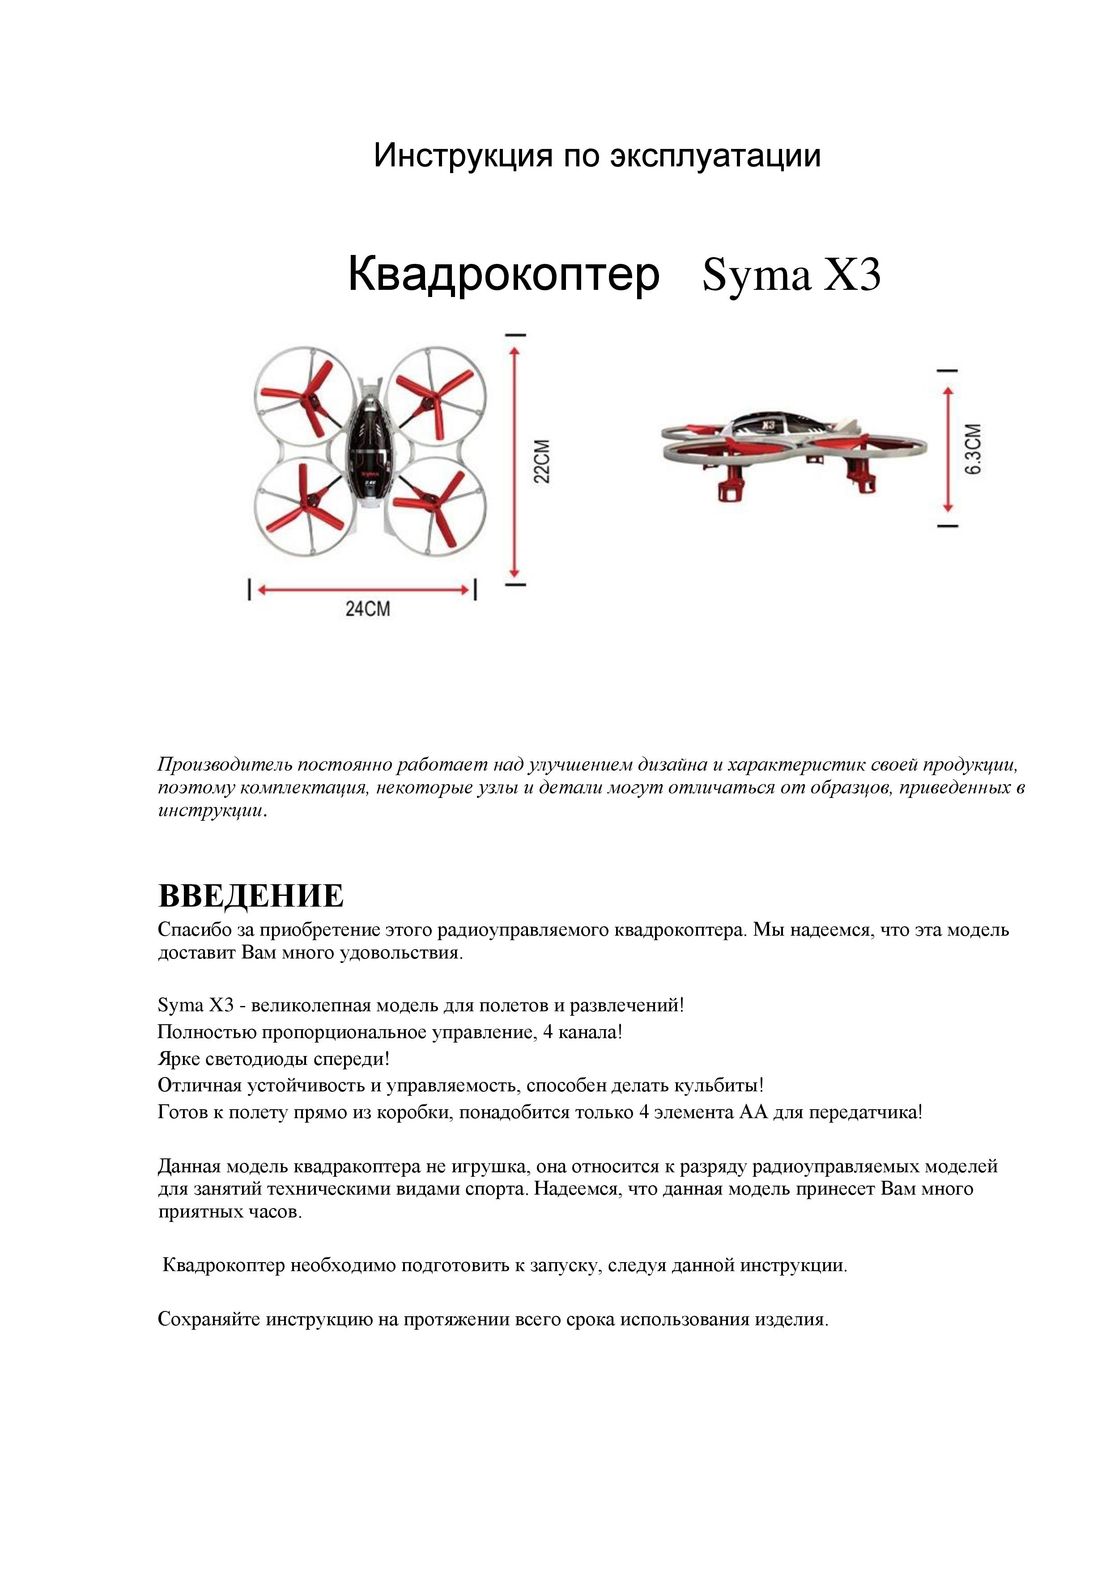 Syma X3 инструкция на русском